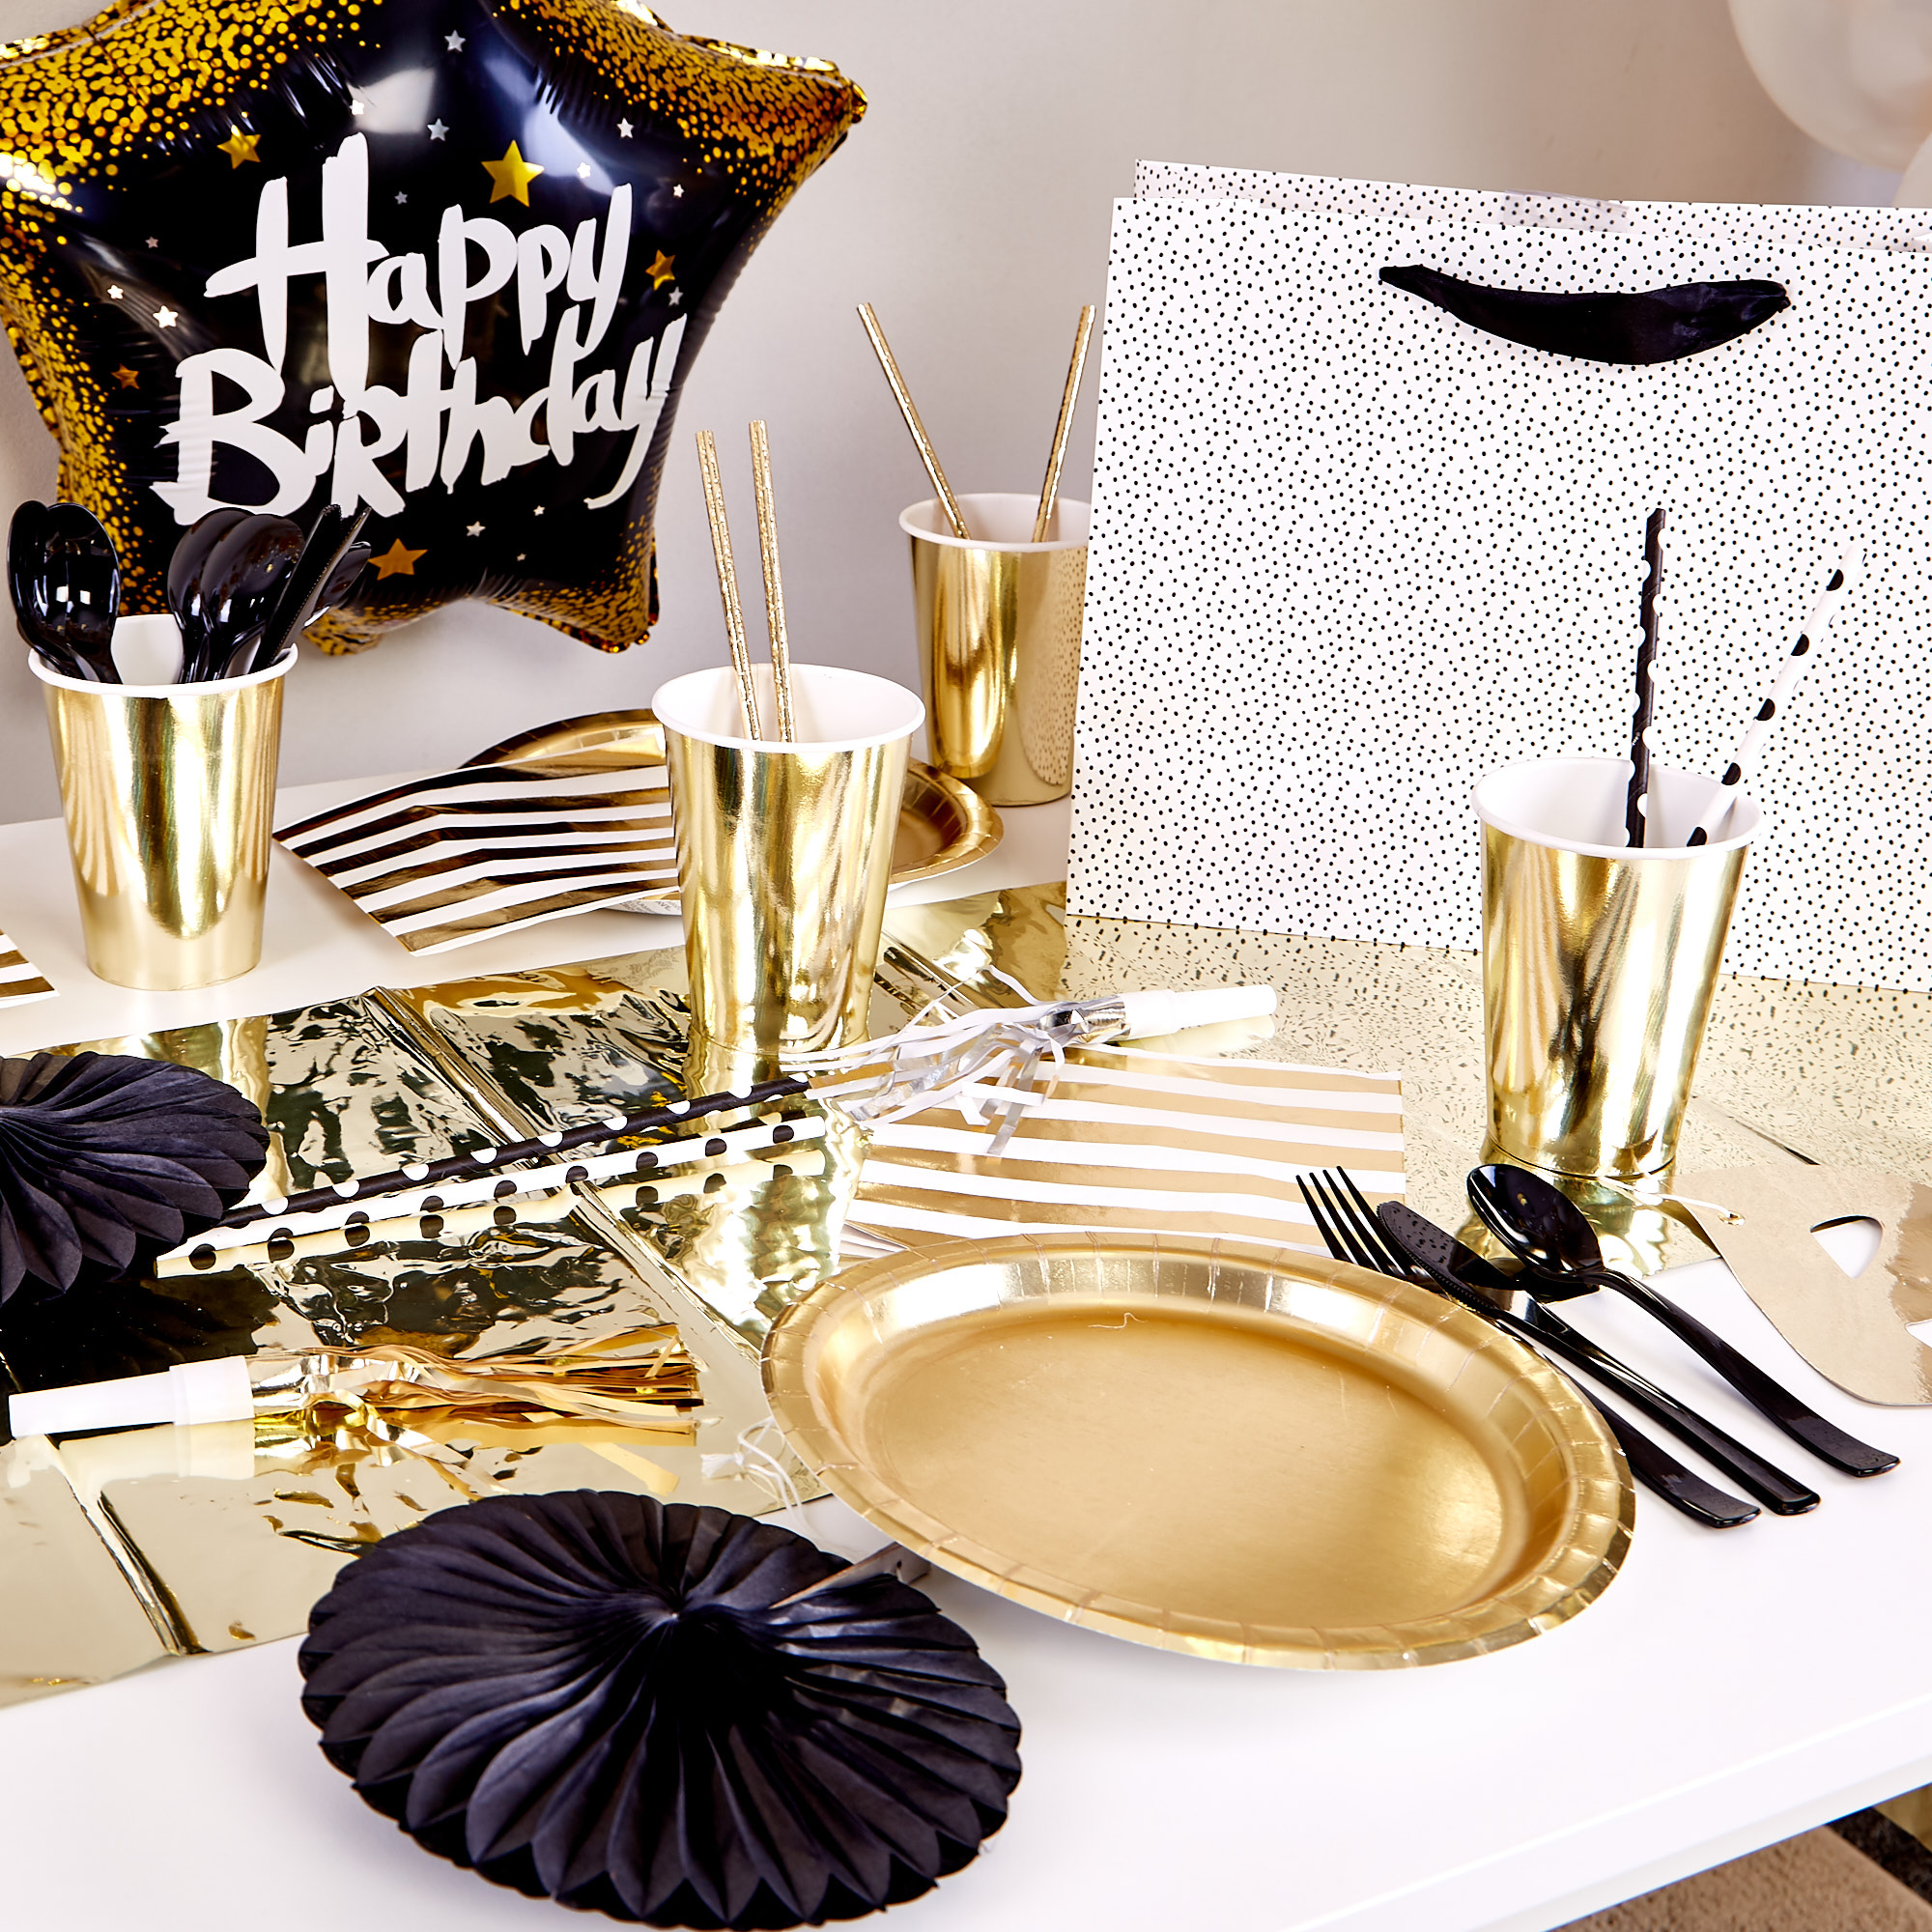 Black & GoldThemed Birthday Party Range